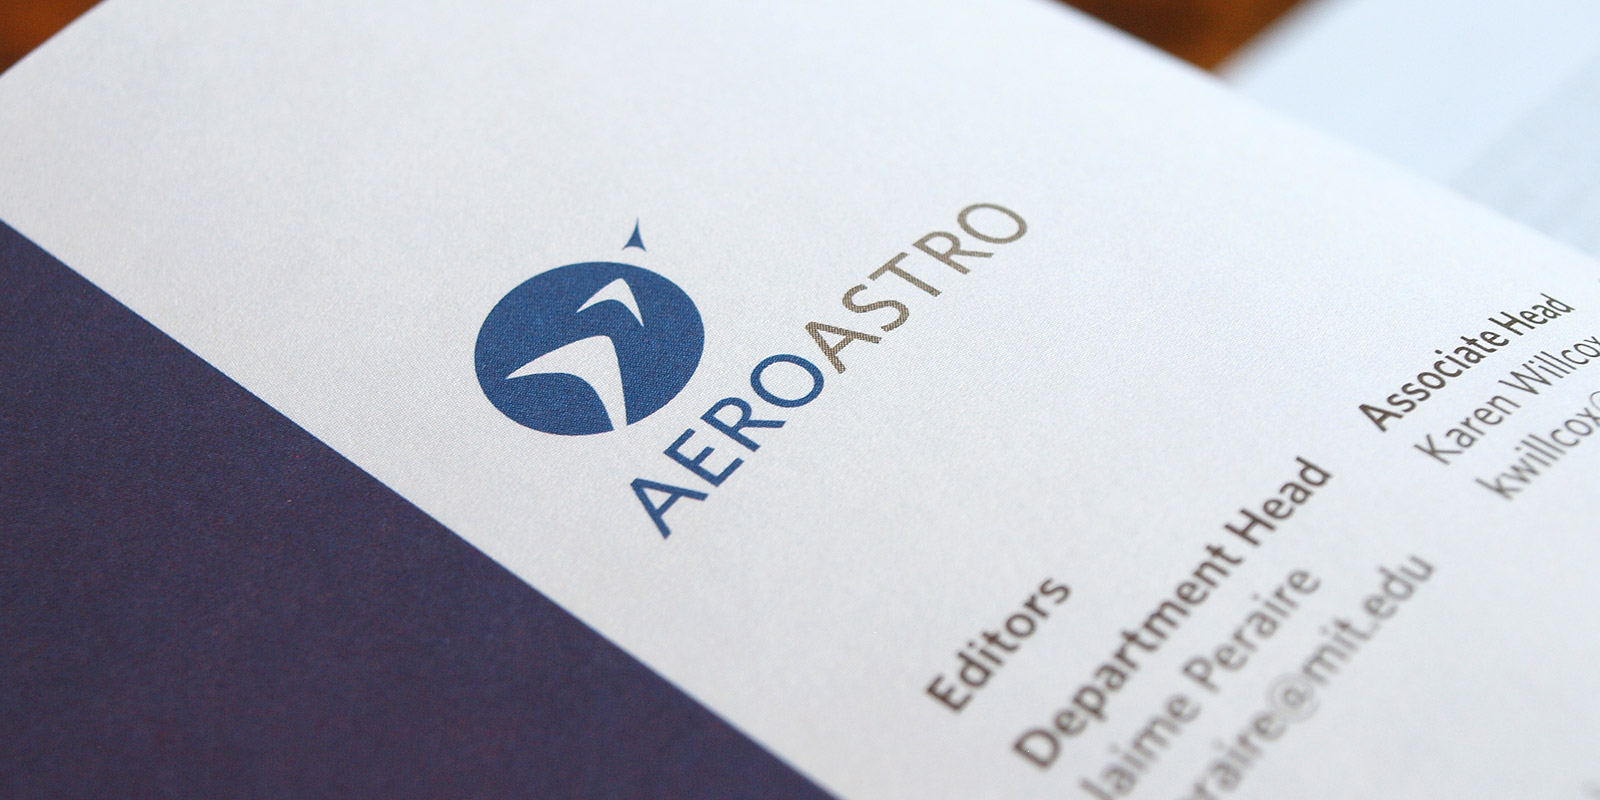 MIT AeroAstro department logo design